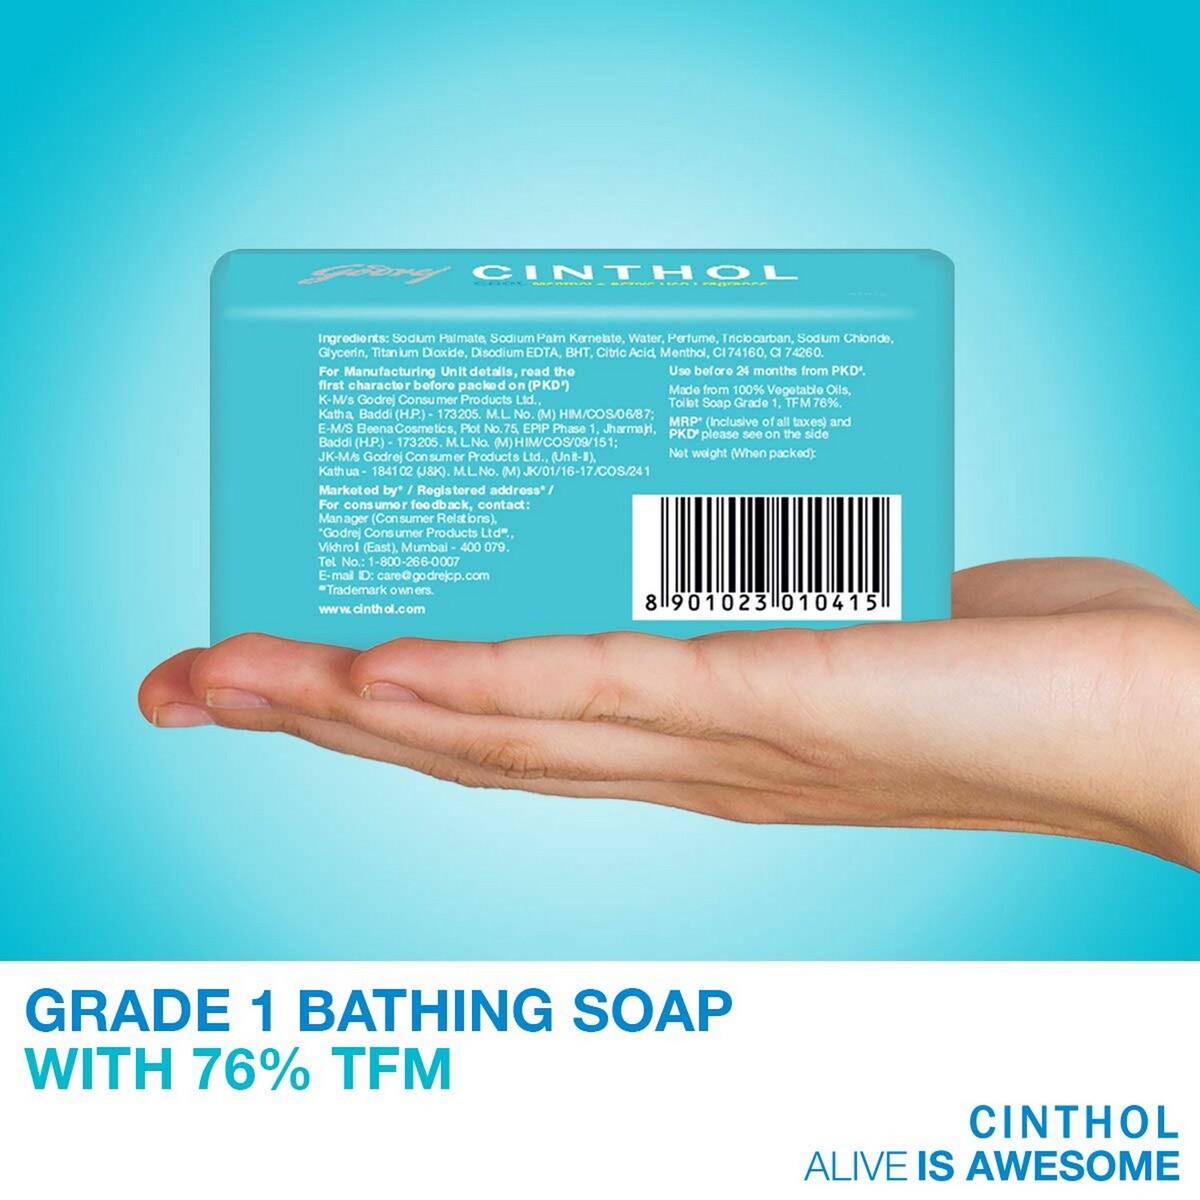 Cinthol Soap Cool 100g